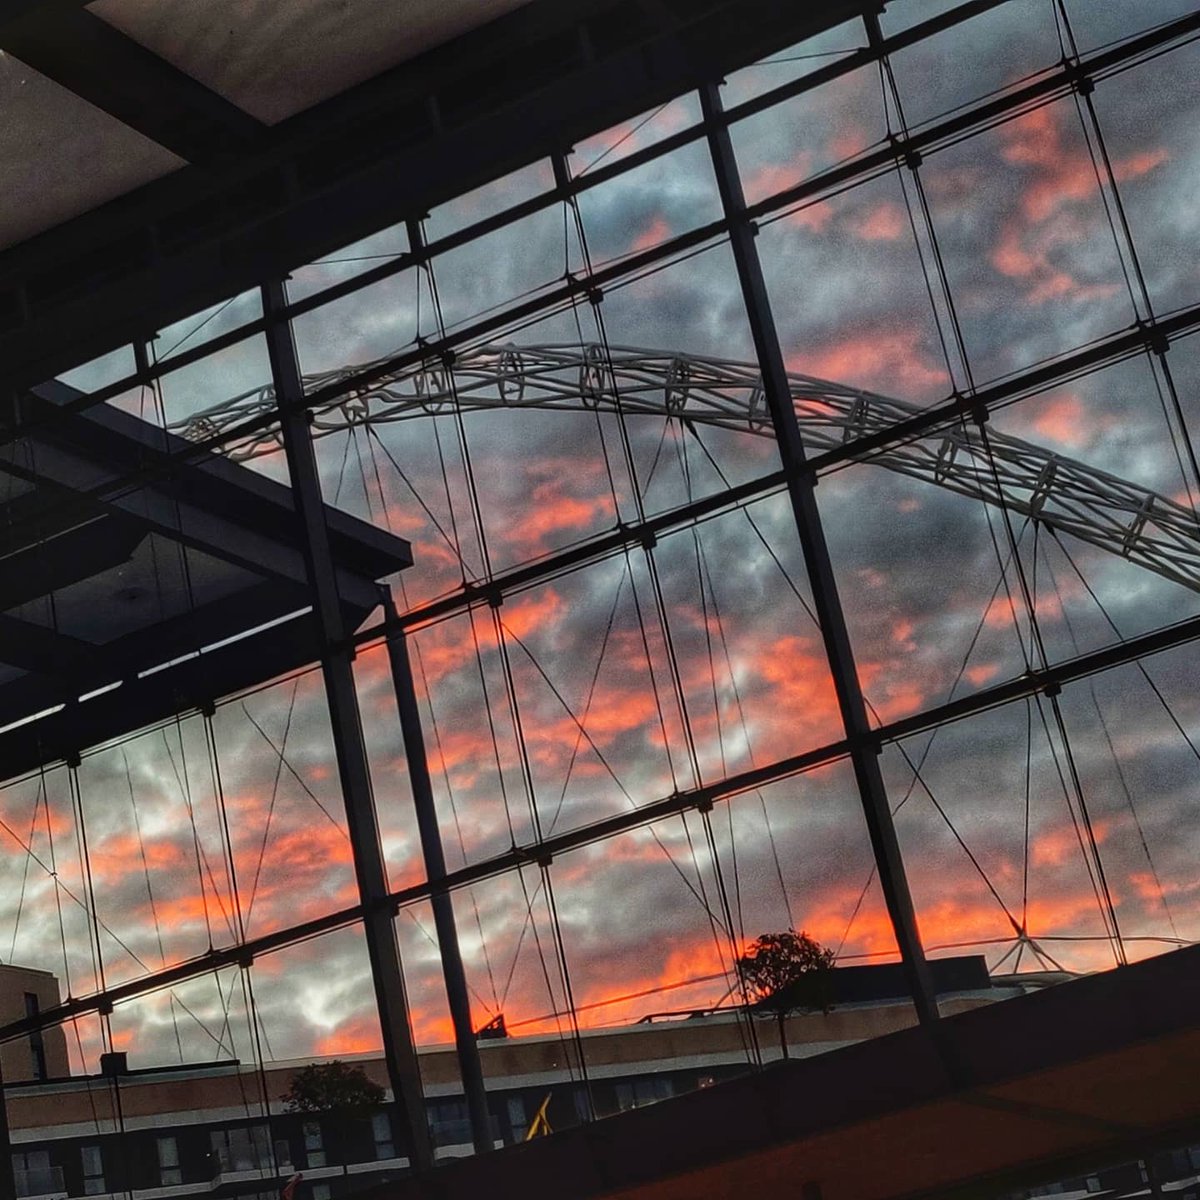 🔺🔻Red Sky 🔻🔺
#redsky #ThePhotoHour @ThePhotoHour #morning #sky #ukweather #brentciviccentre #Wembley #wembleyarena #wembleyarch #wembleystadium #November #clouds #Weather #photooftheday #PhotoMode #photographylovers #stadium